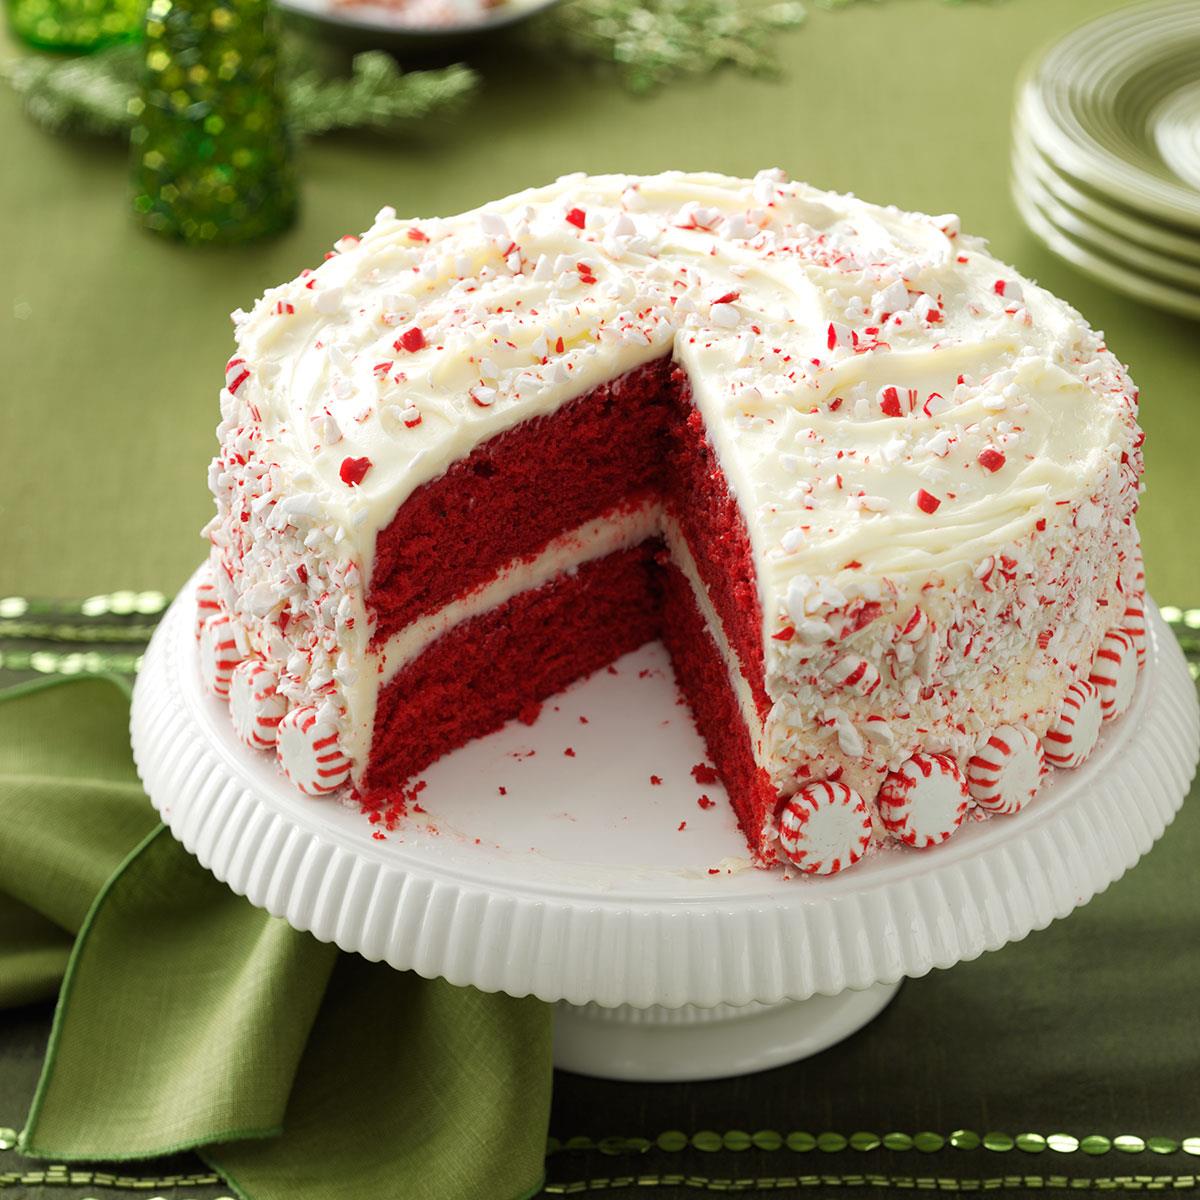 ý tưởng red velvet cake decorating ideas để tạo ra món bánh ngọt ngào